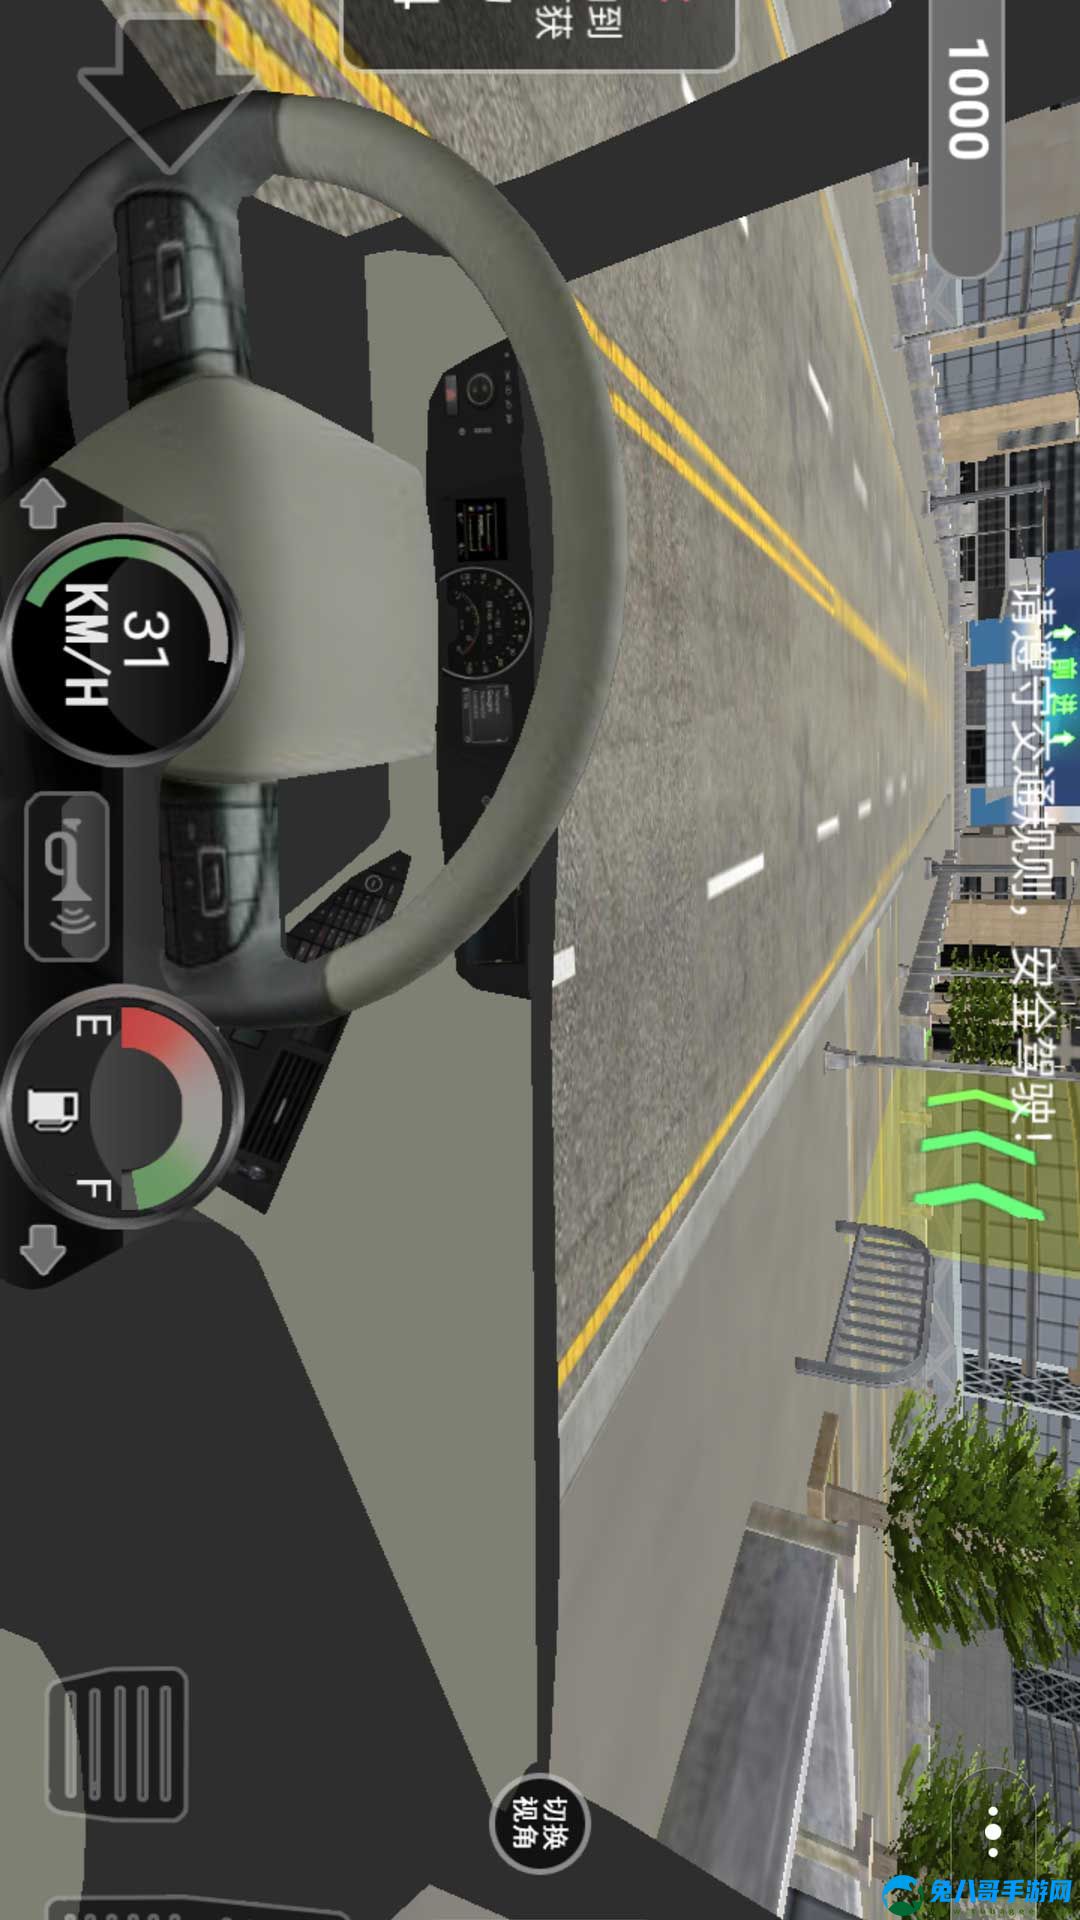 大货车司机模拟游戏安卓版 v1.0.1